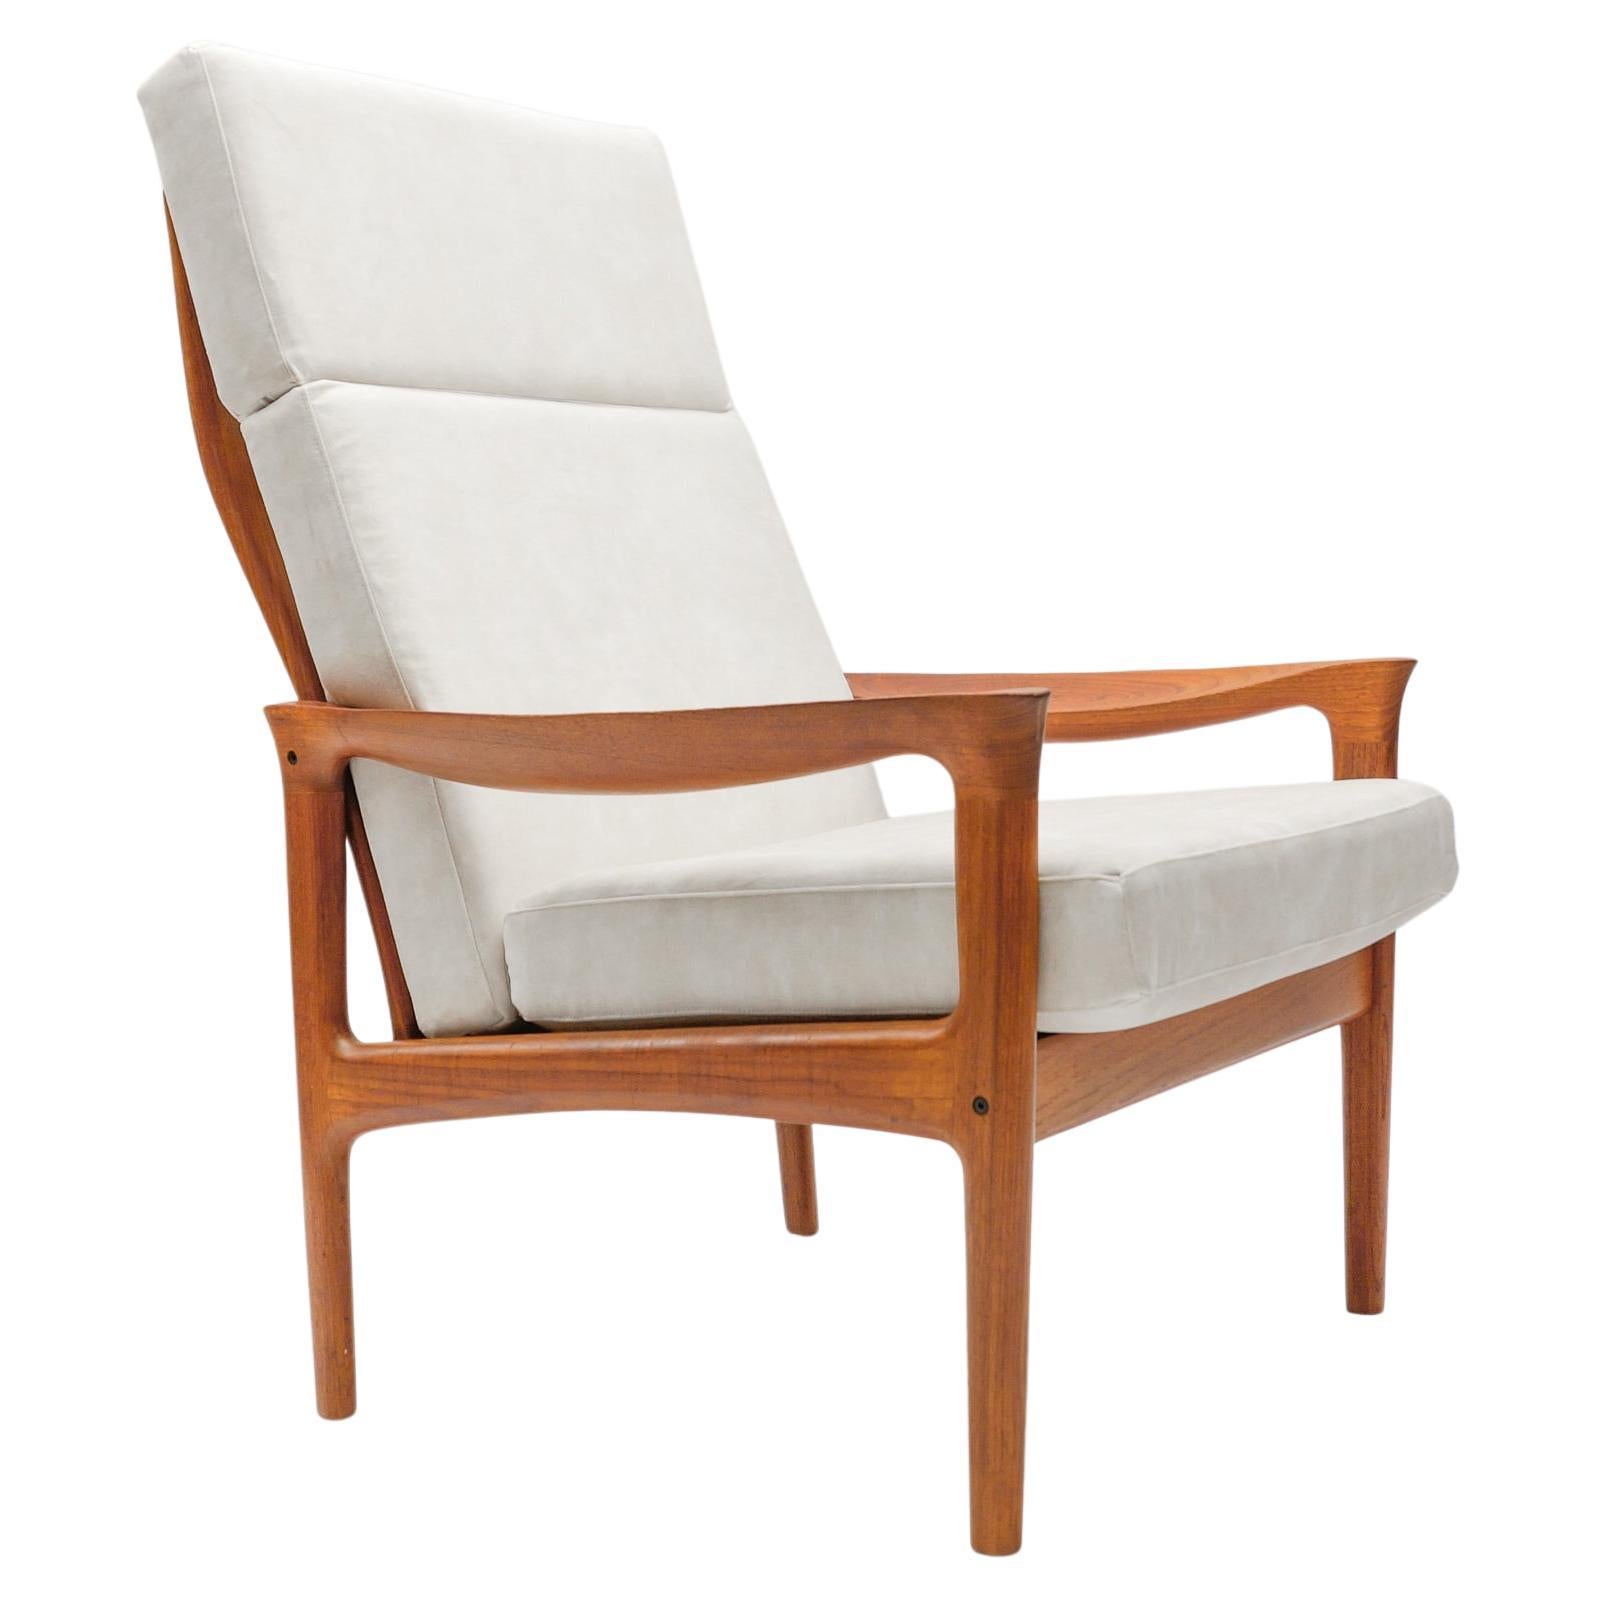 Newly Upholstered Teak High-Back Armchair, 1960s Denmark For Sale